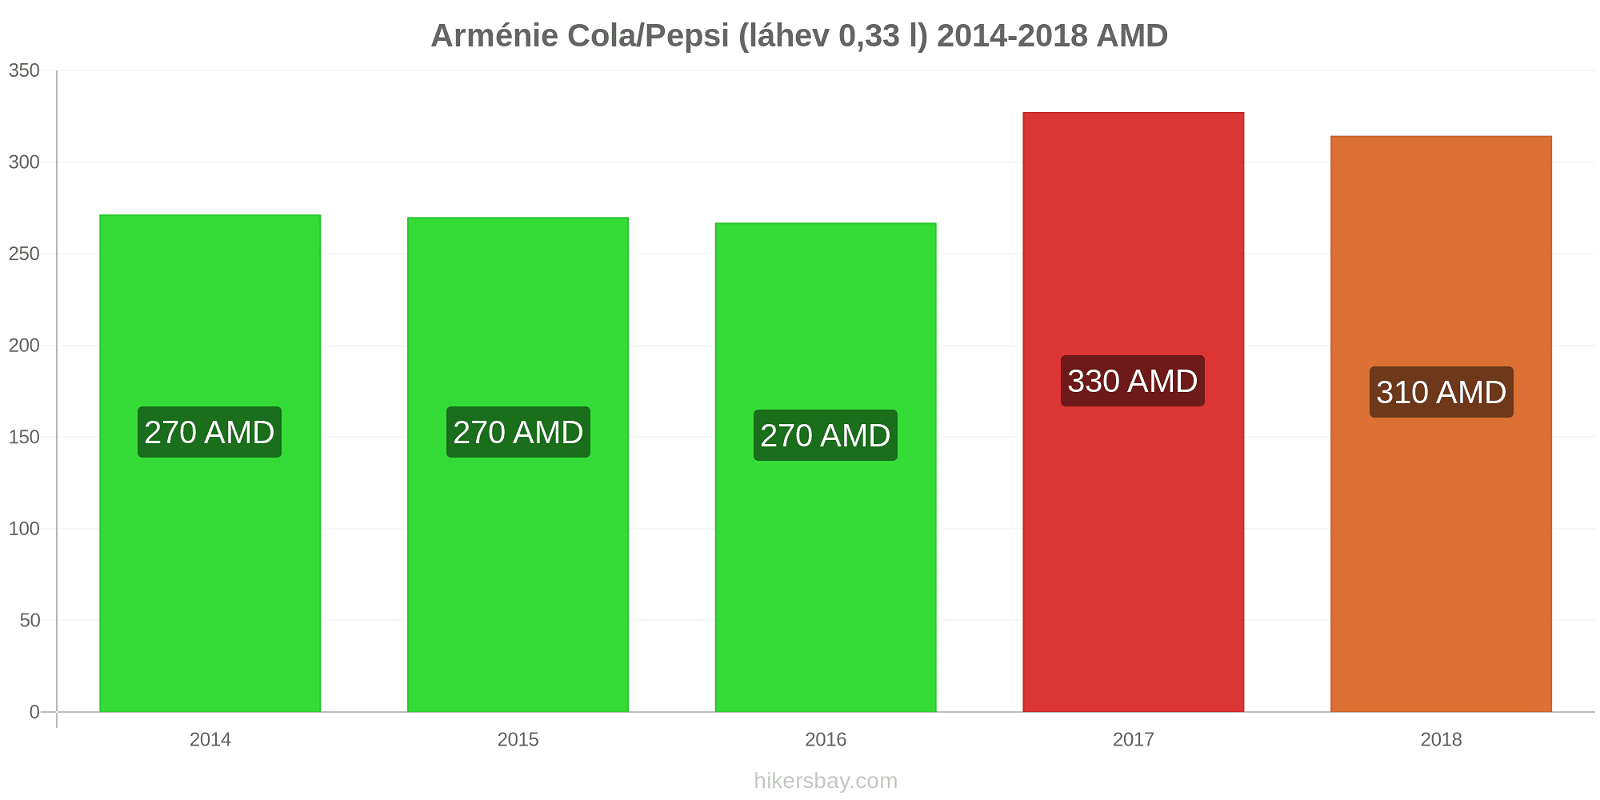 Arménie změny cen Coca-Cola/Pepsi (láhev 0.33 l) hikersbay.com